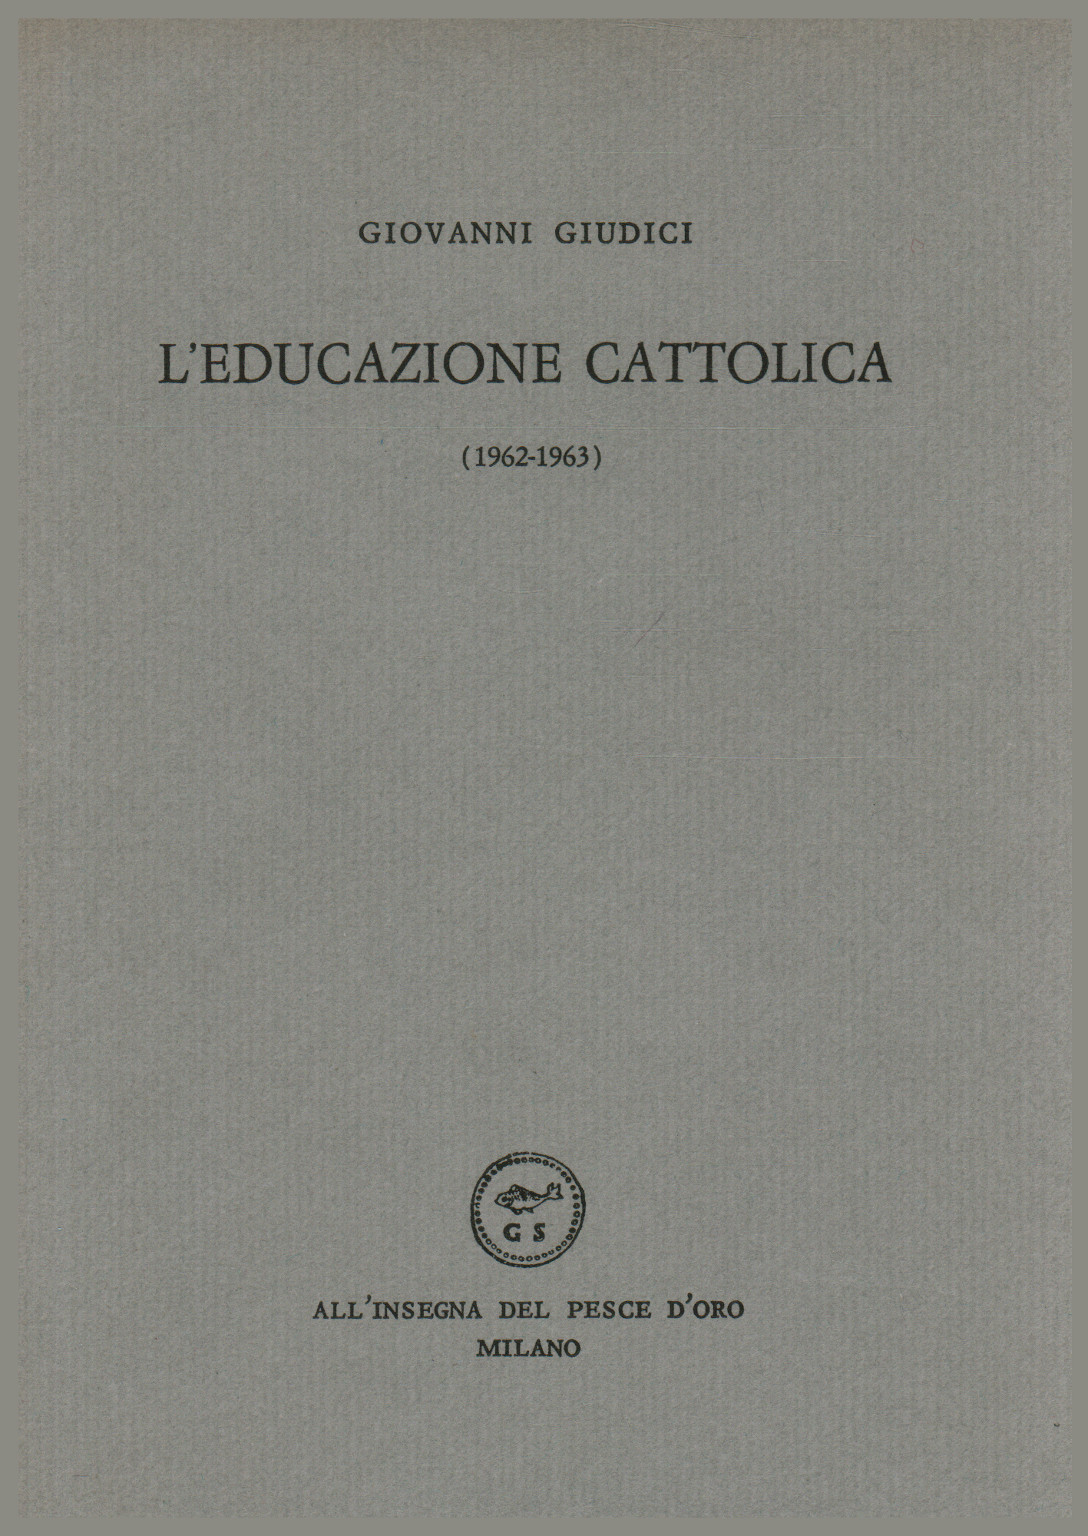 Catholic education (1962-1963), s.a.